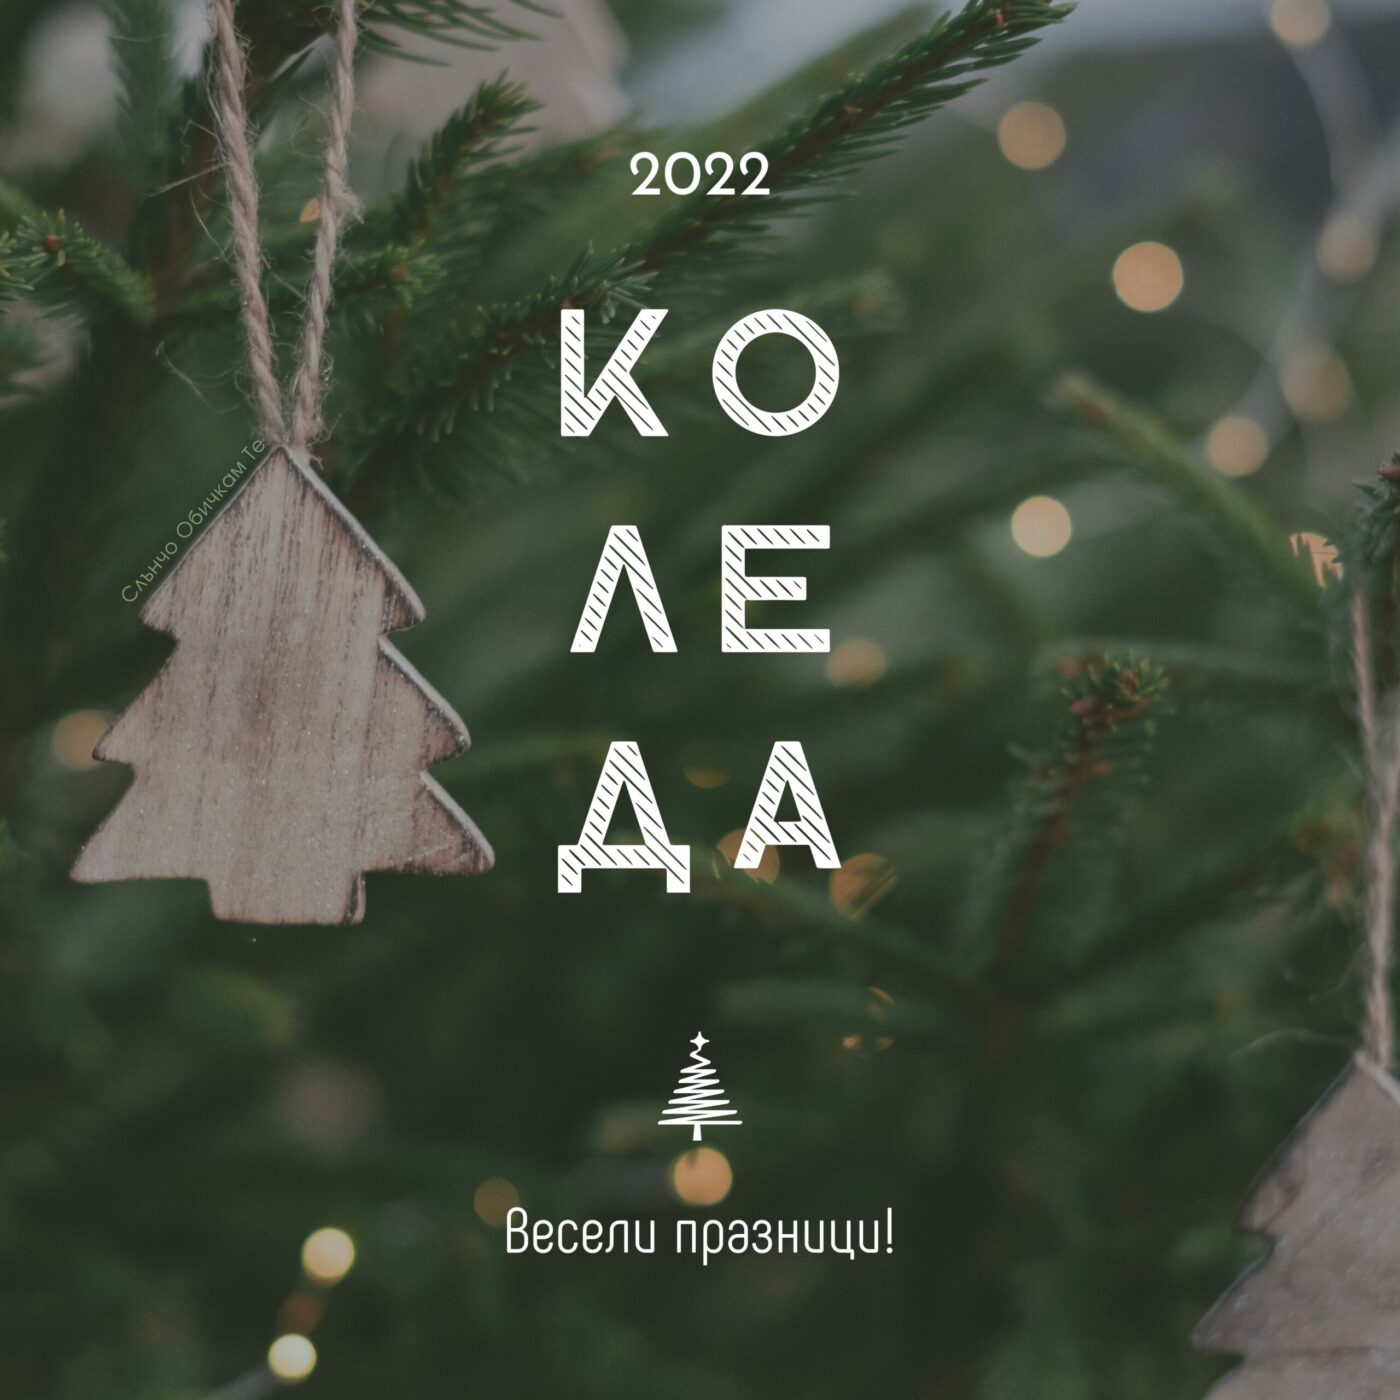 Коледа 2022, весели празници, коледникартички, новогодишни картички, Слънчо Обичкам Те